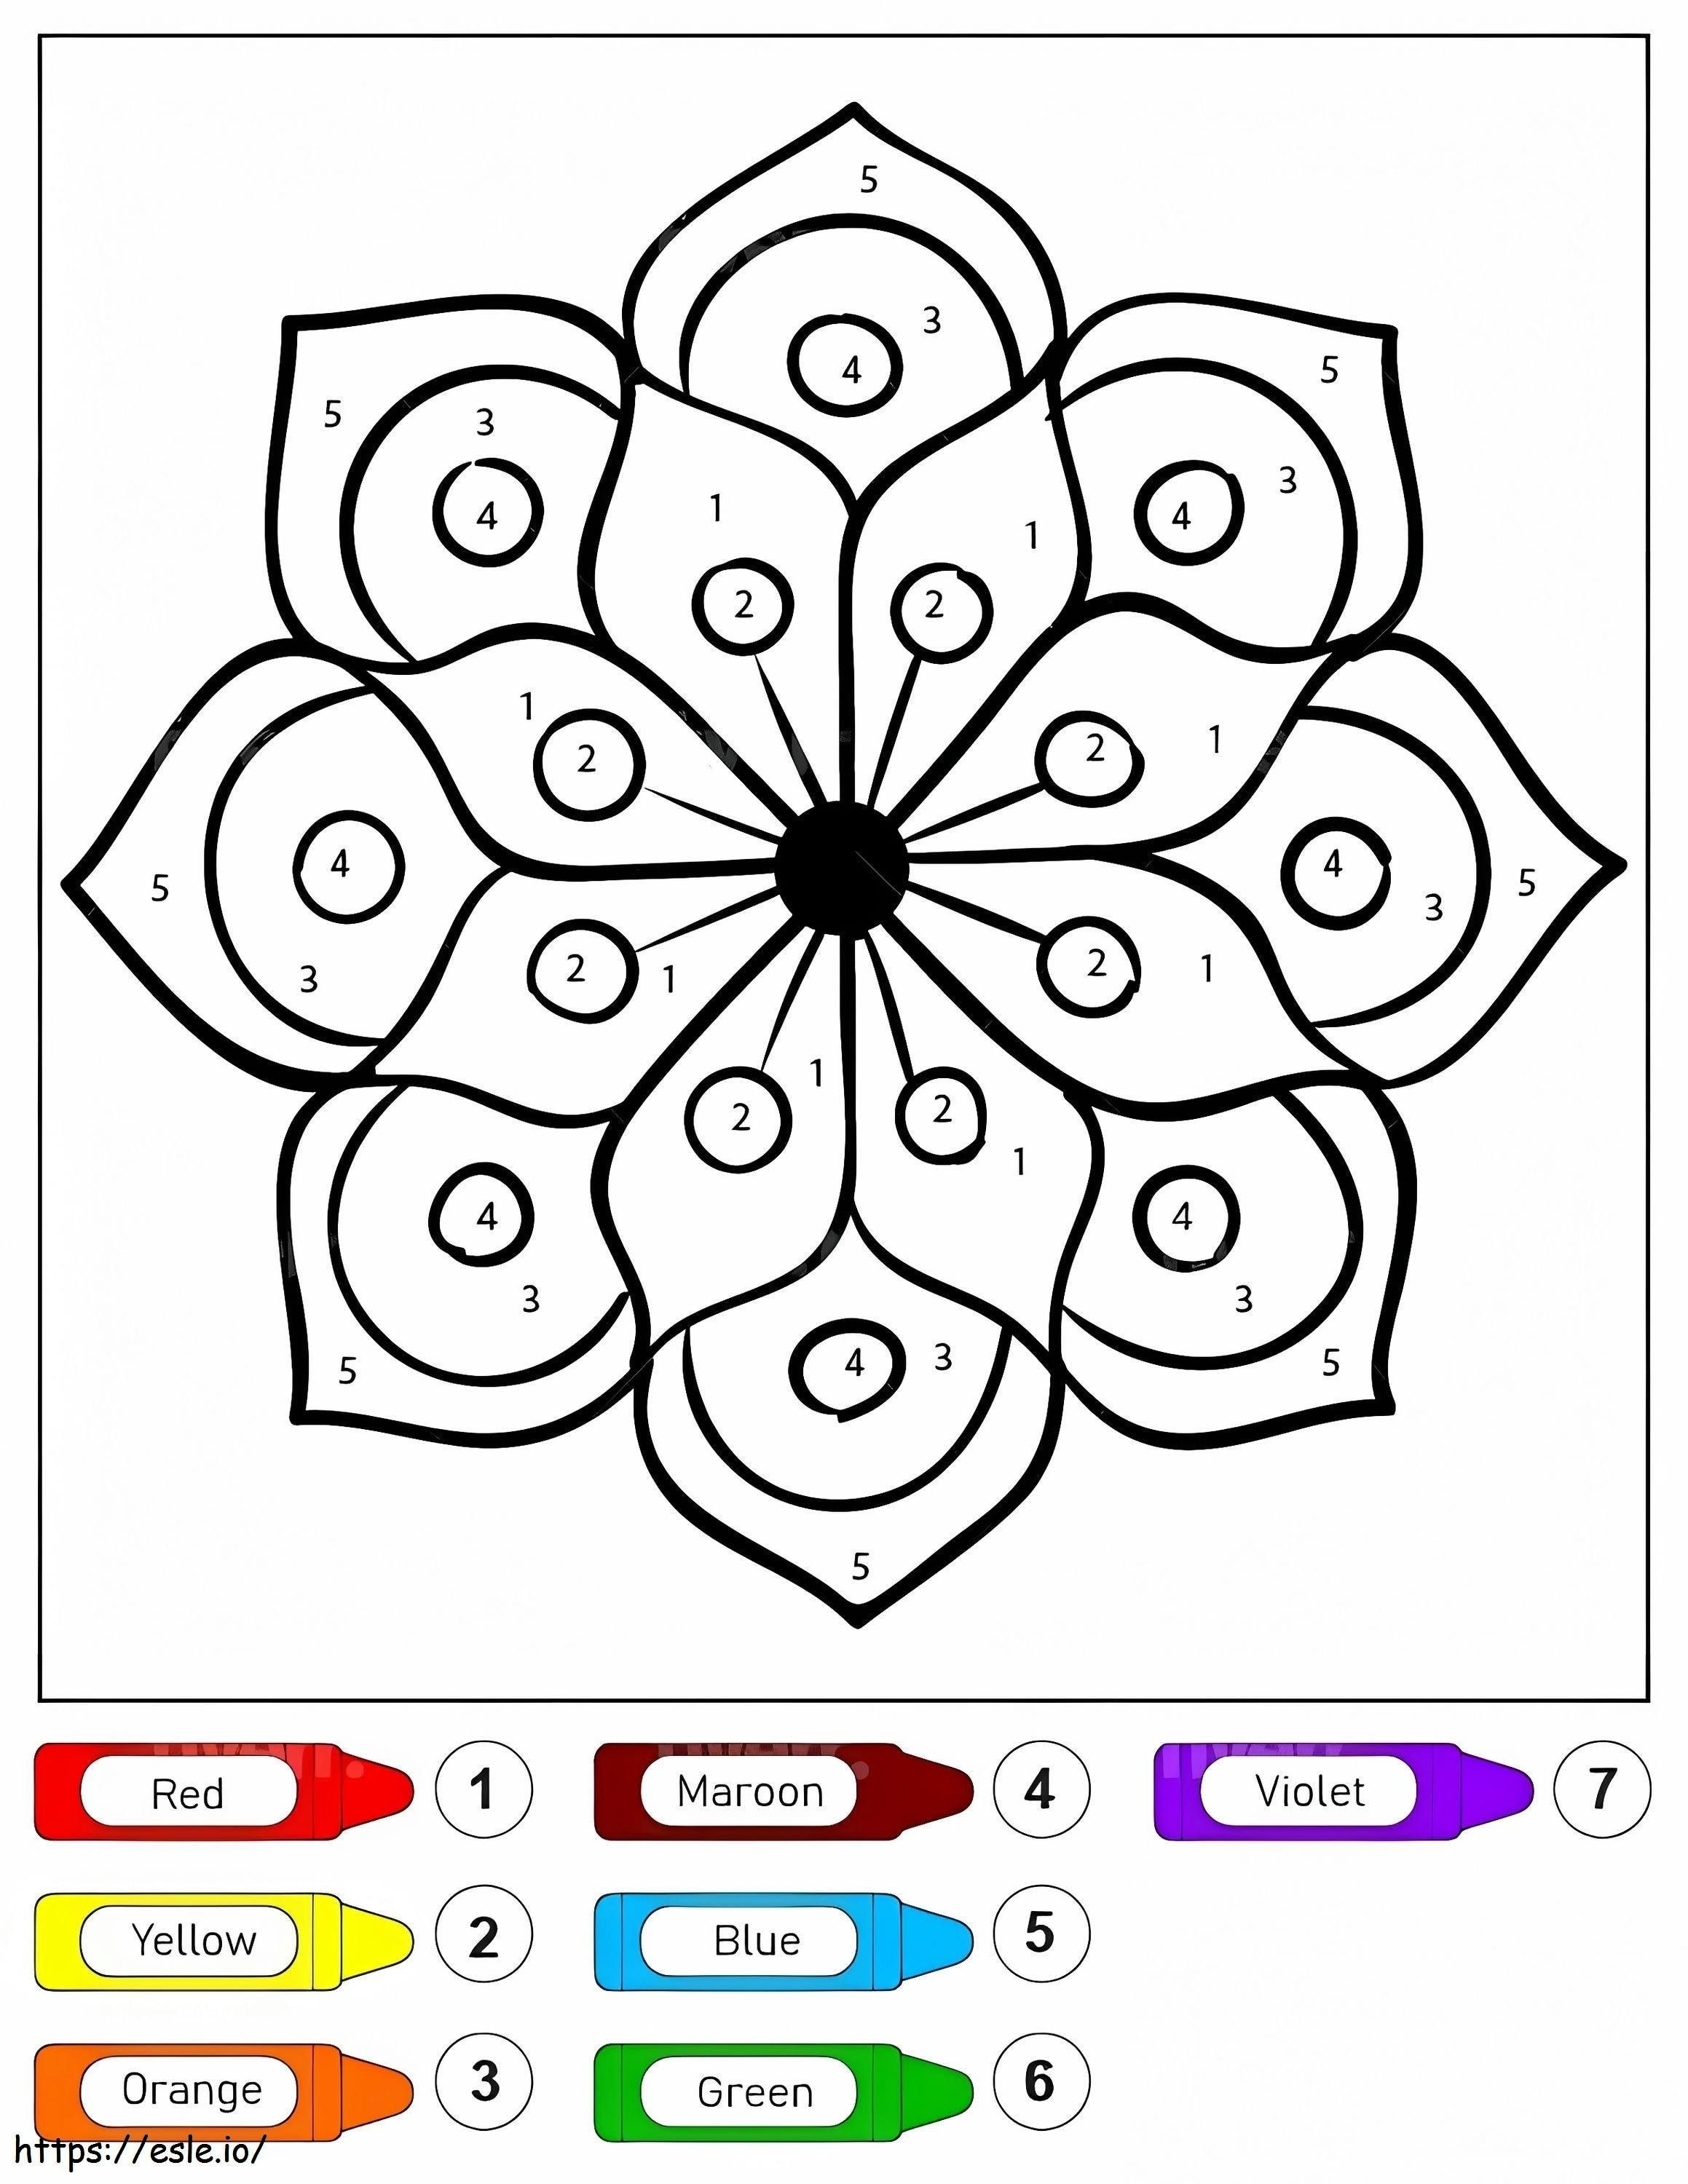 Blumenzeichnungs-Mandala für Kinder, Malen nach Zahlen ausmalbilder